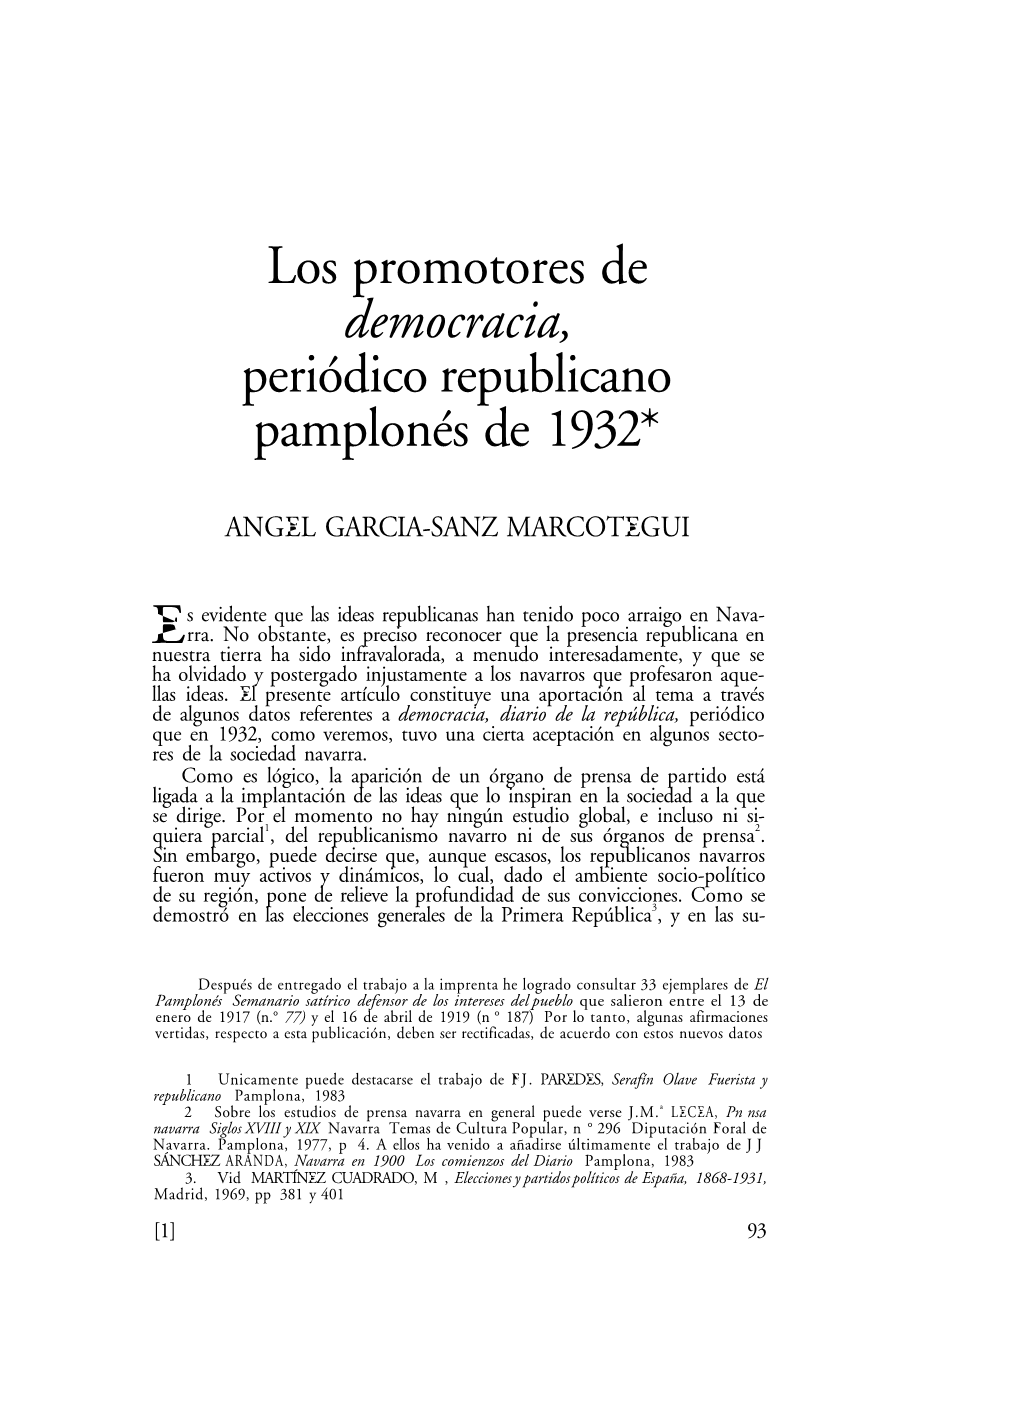 Los Promotores De Democracia, Periódico Republicano Pamplonés De 1932*